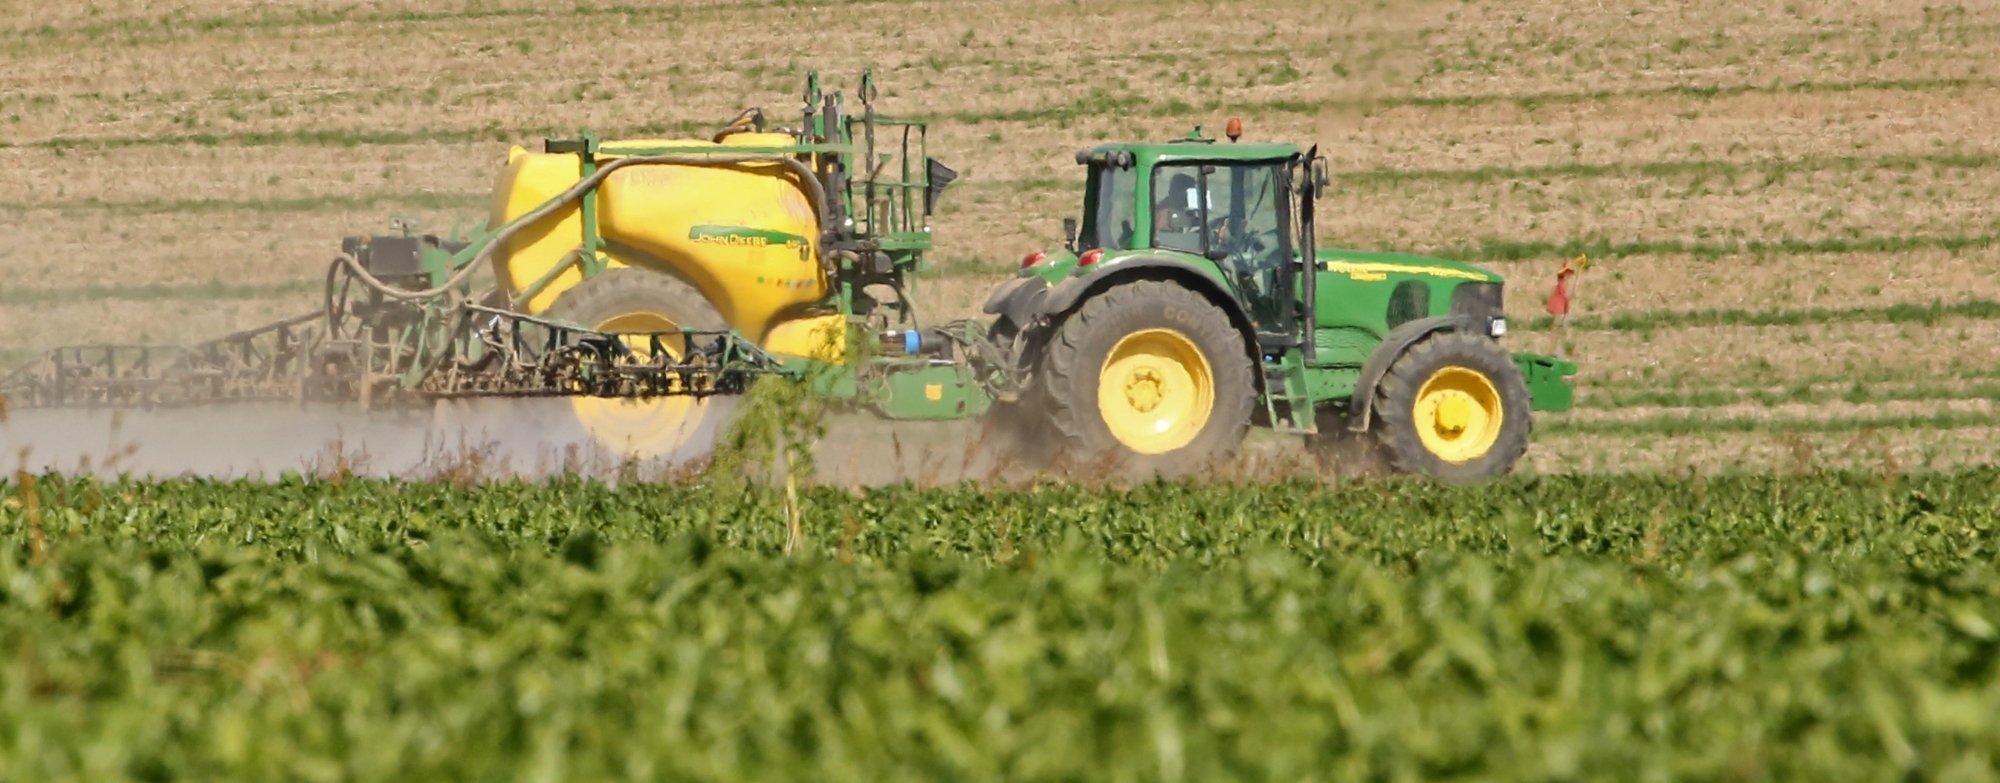 Ein Traktor spritzt Chemikalien auf einen Acker